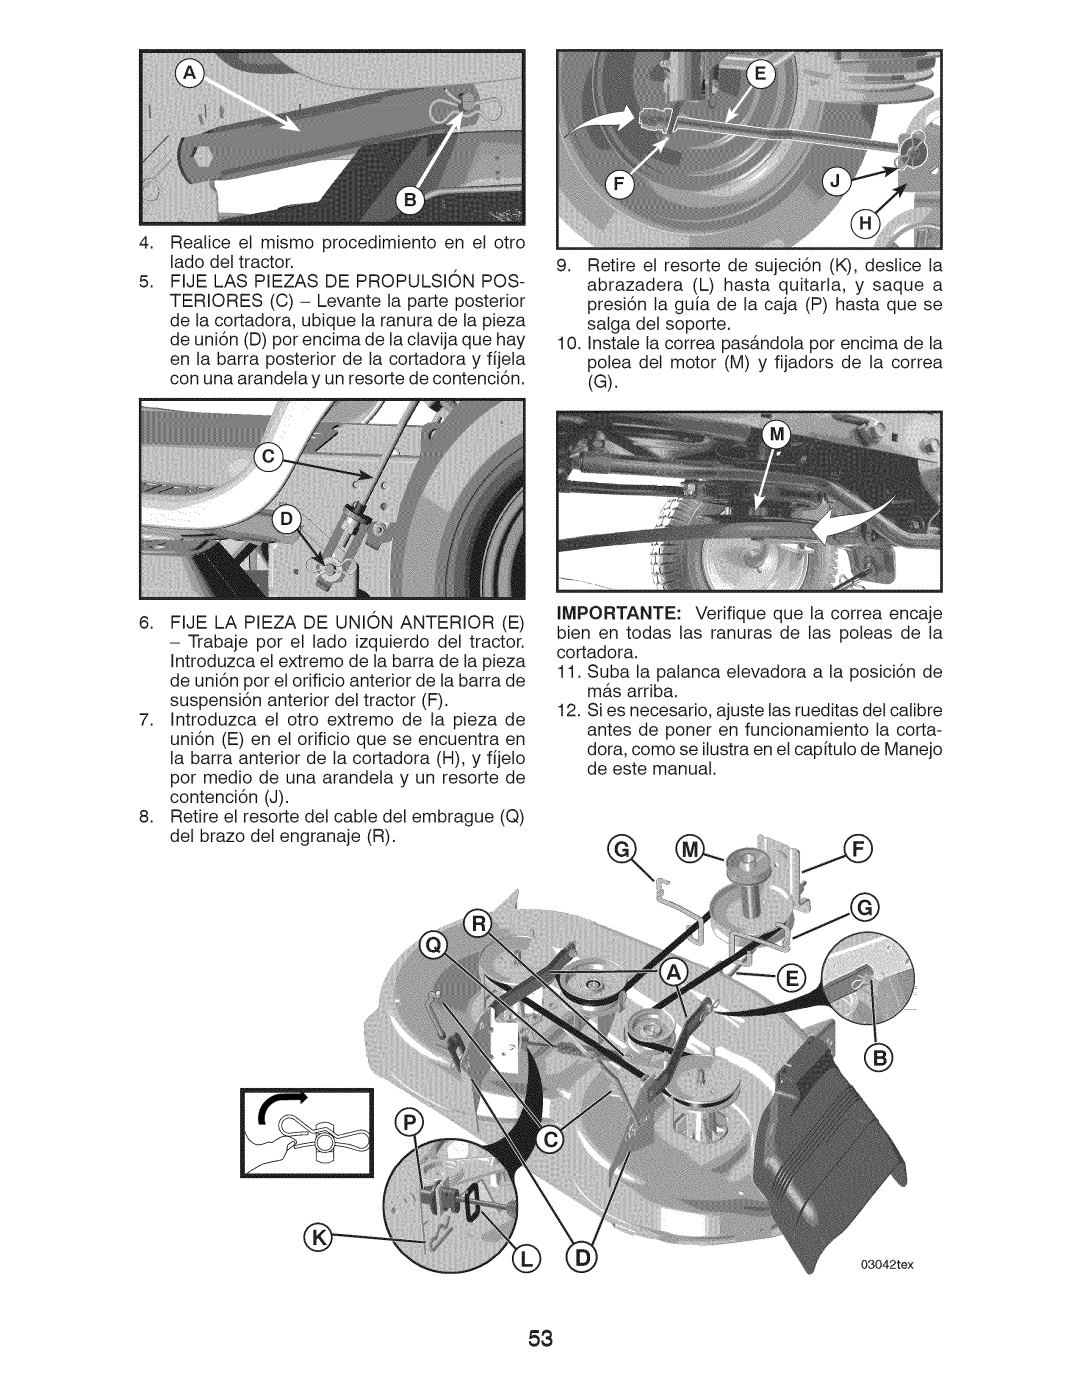 Craftsman 917.289240 owner manual Realice el mismo procedimiento en el otro lado del tractor 